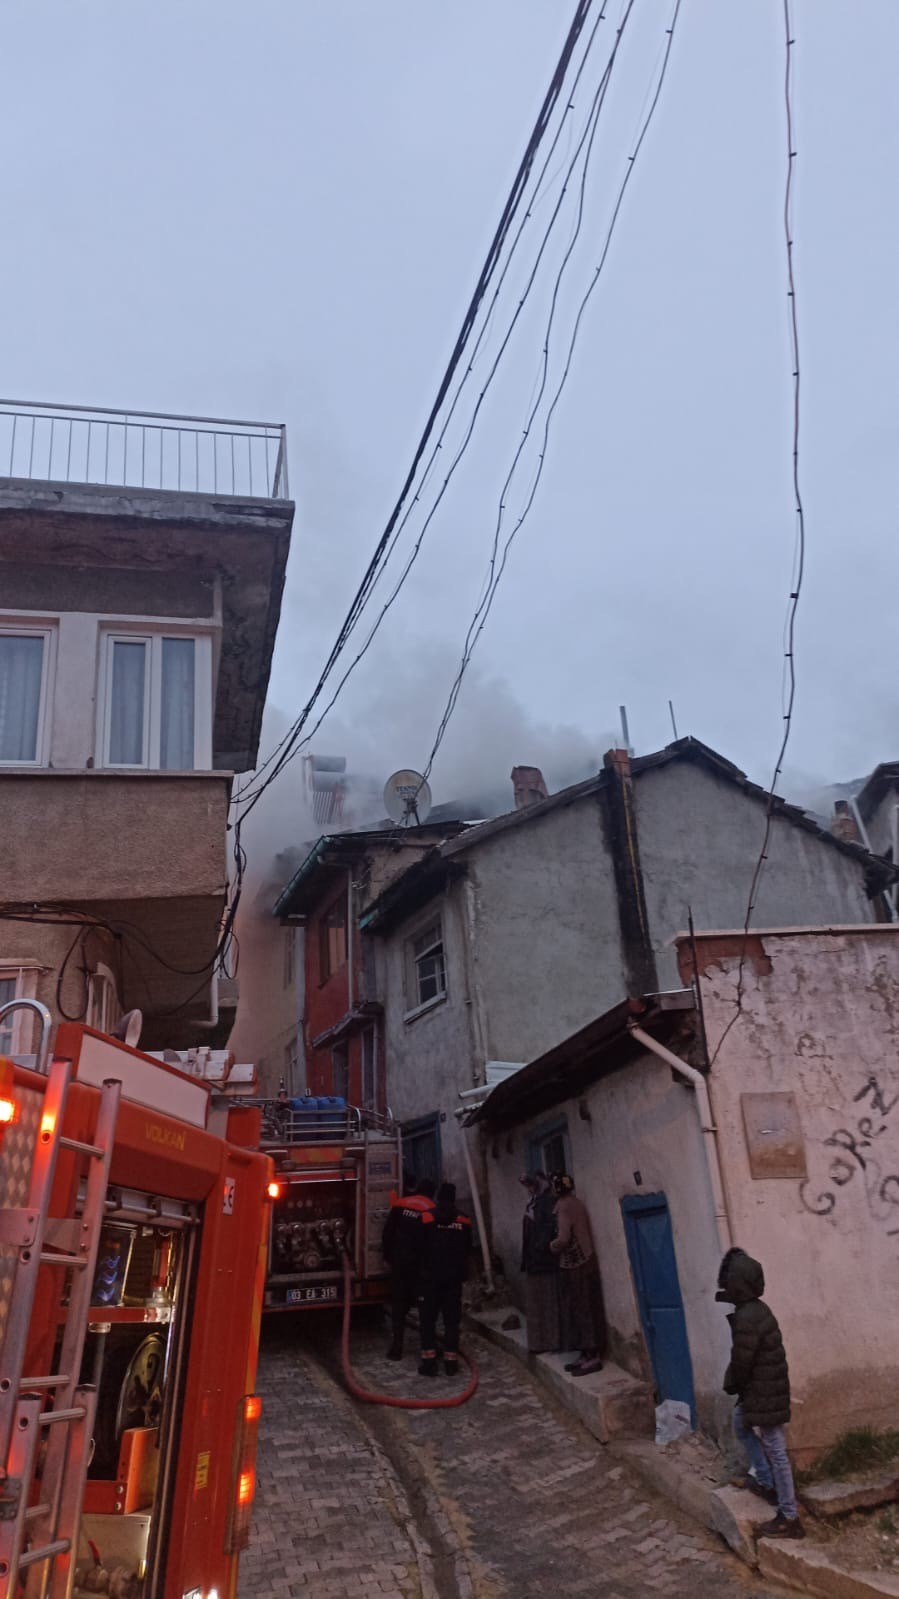 Afyonkarahisar’ın merkezinde bulunan iki katlı bir binanın çatısında yangın çıktı.